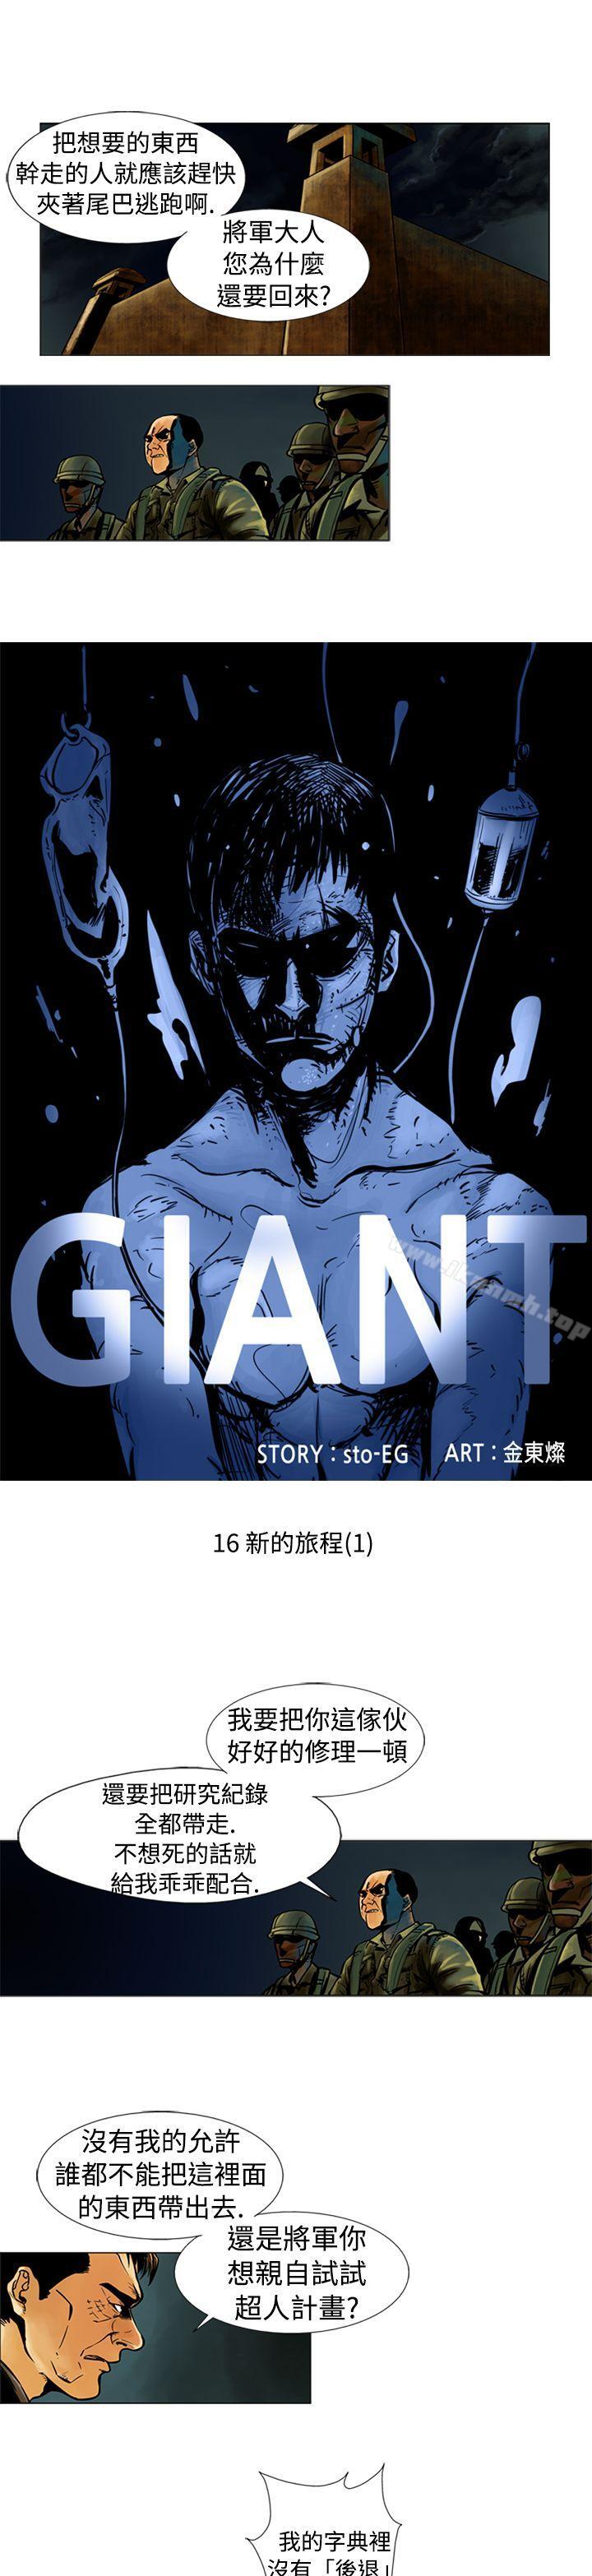 《巨人(完結)》在线观看 第16话 漫画图片1